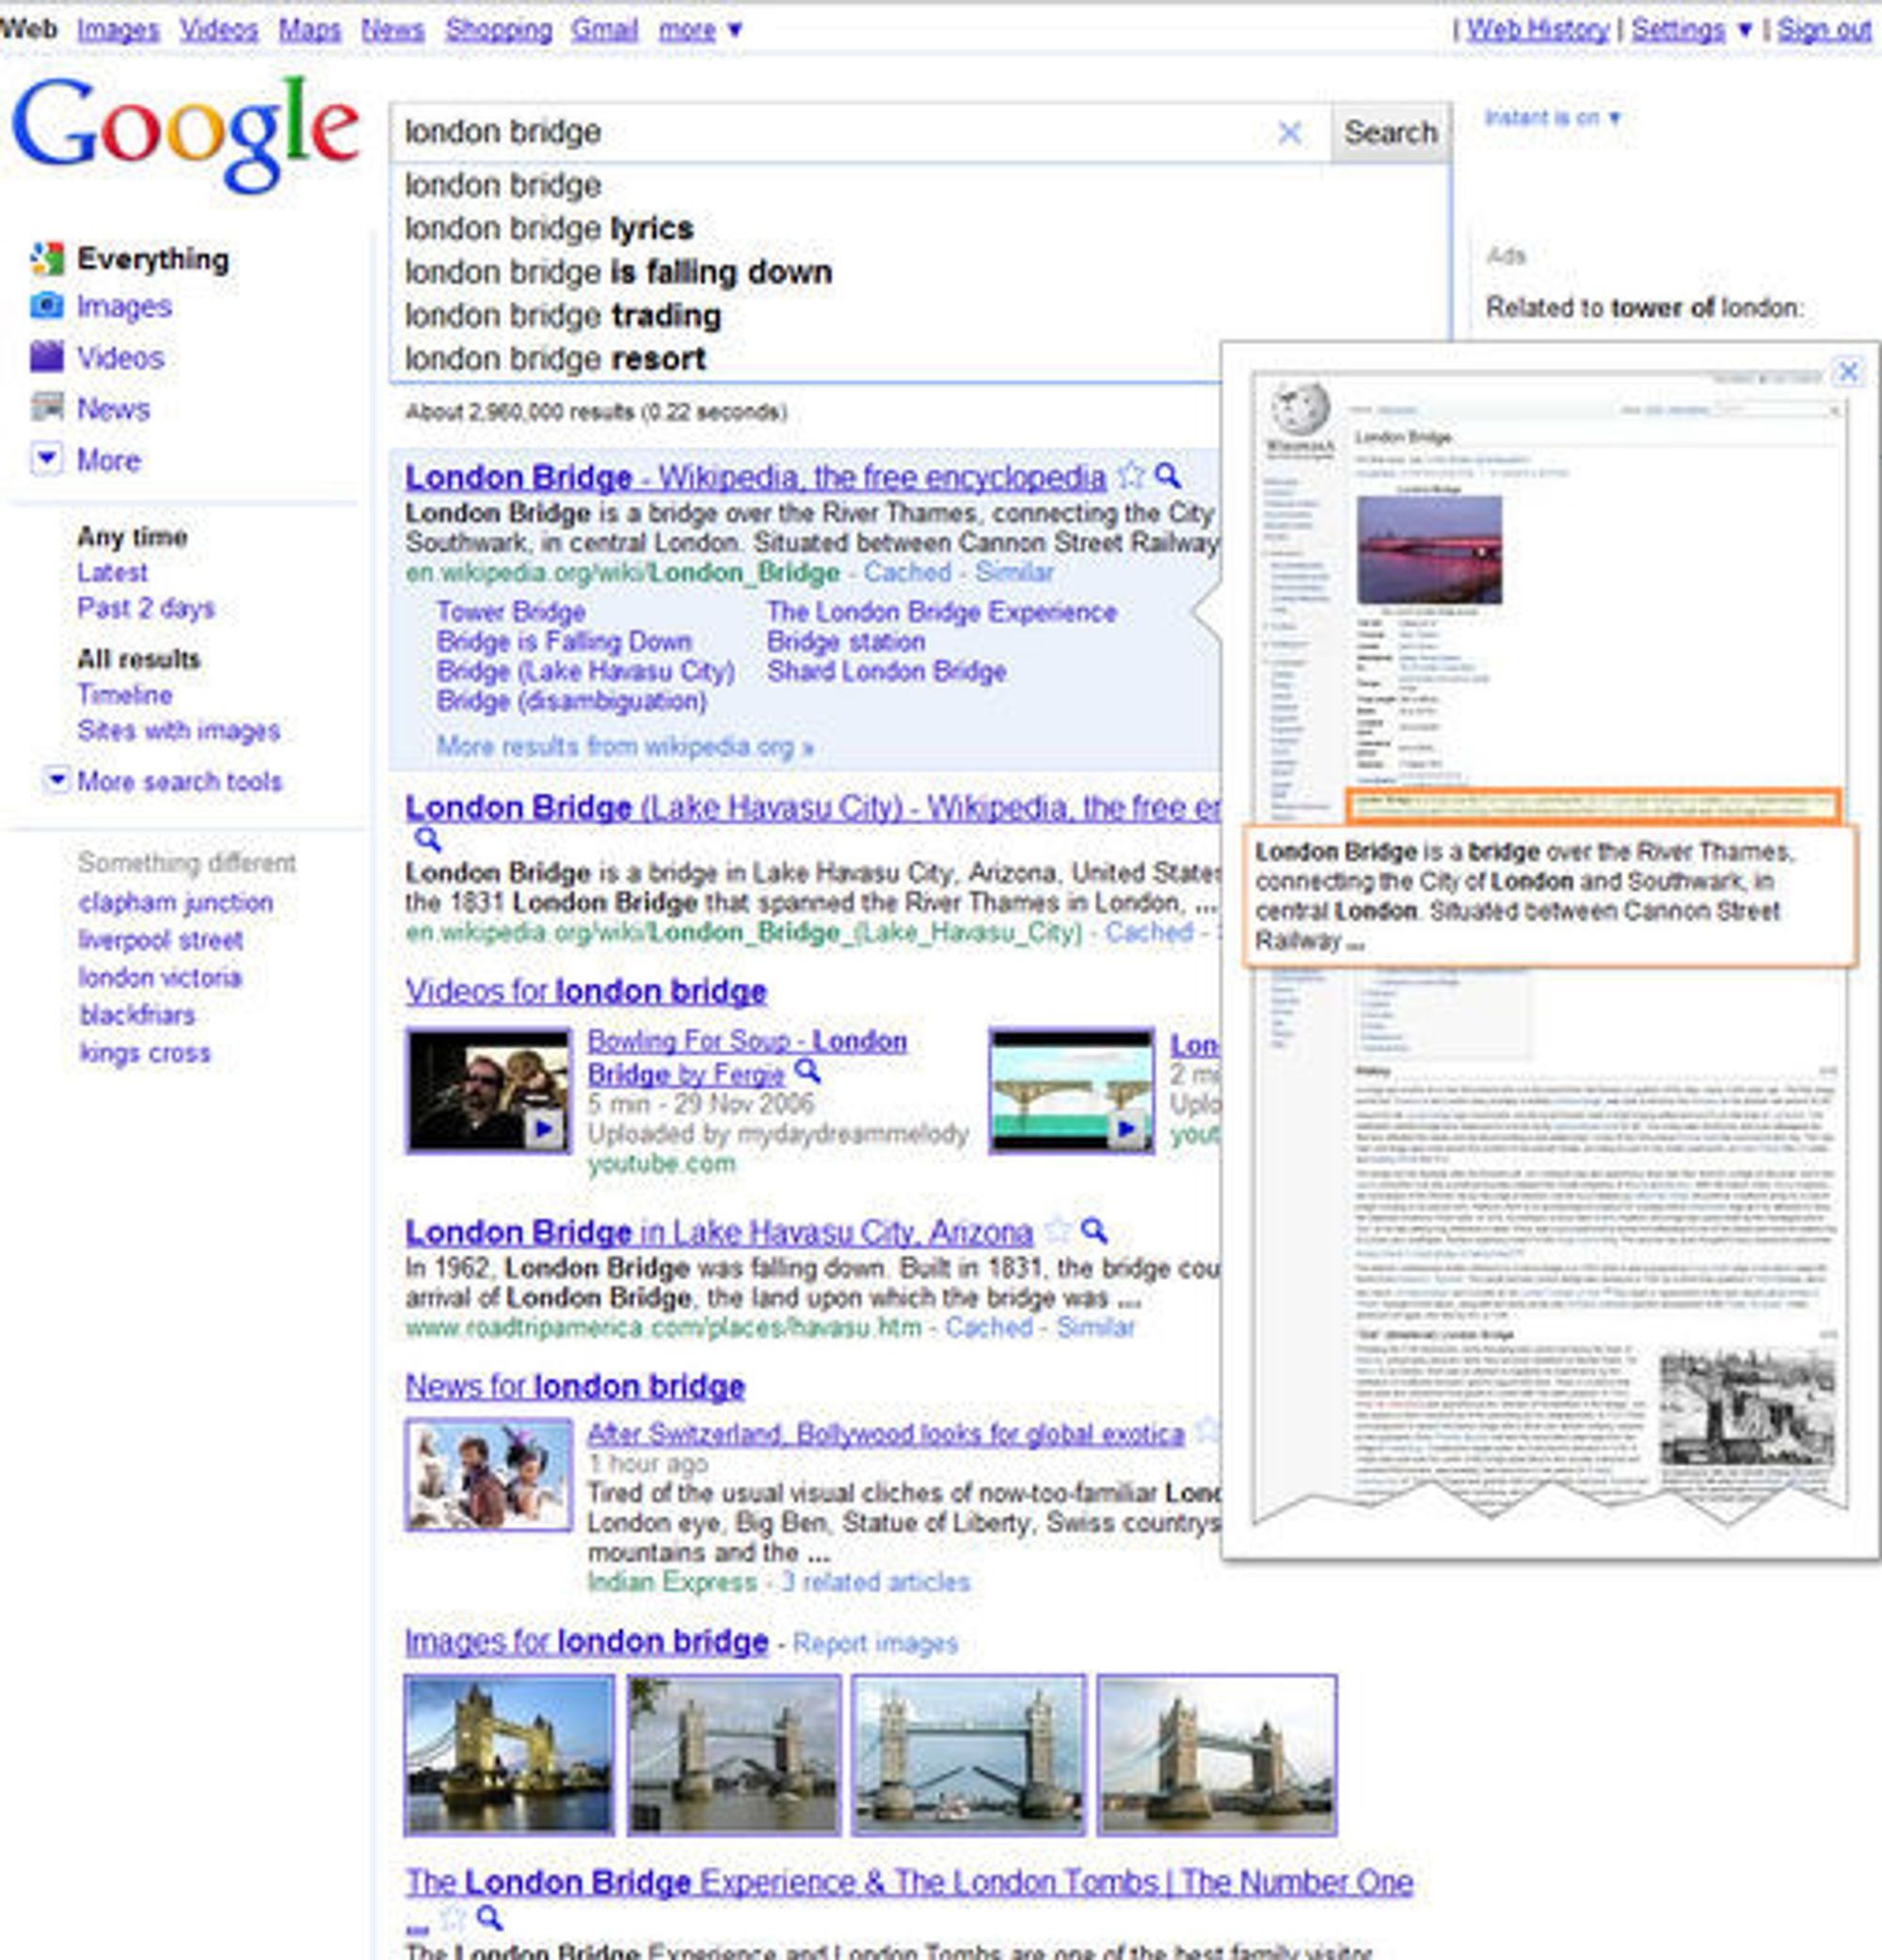 Google Instant Previews gjør det svært raskt å se hvordan websiden bak hvert søkeresultat ser ut.